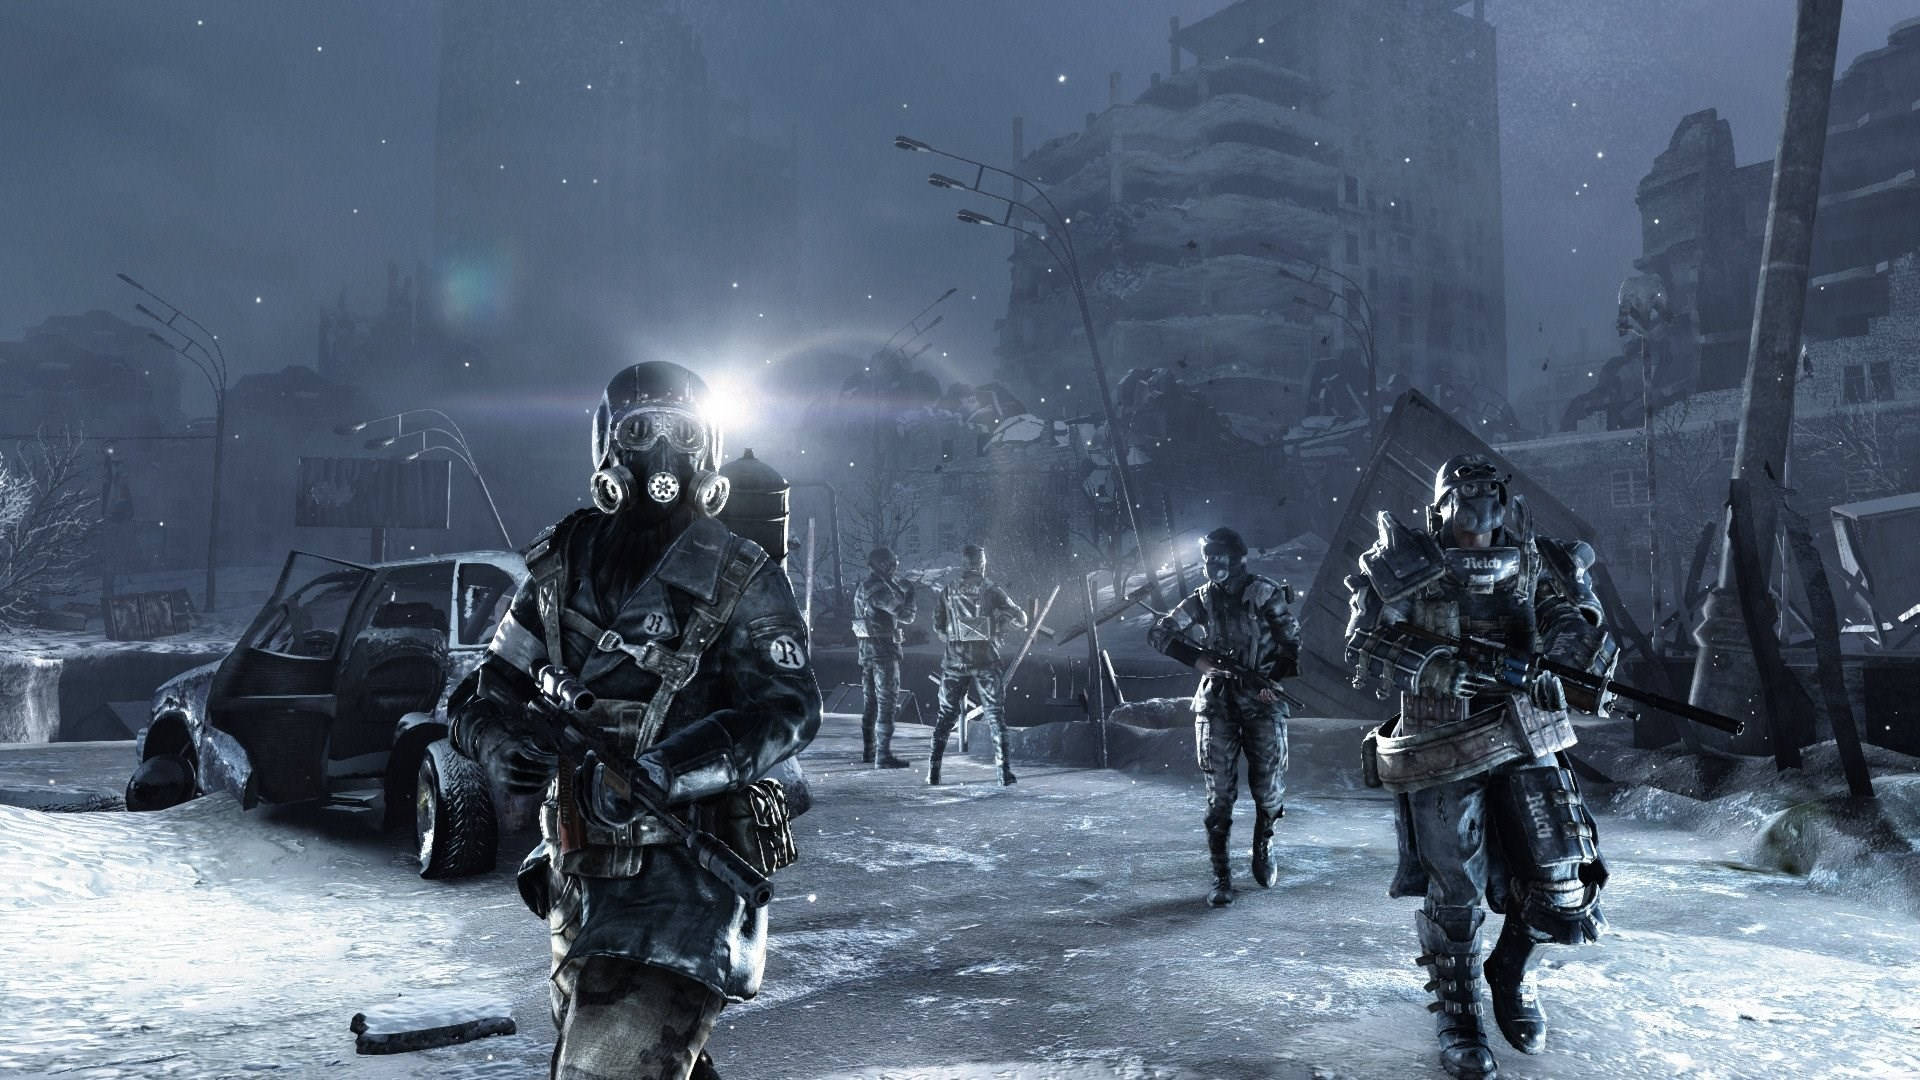 En gruppe soldater går i sneen Wallpaper